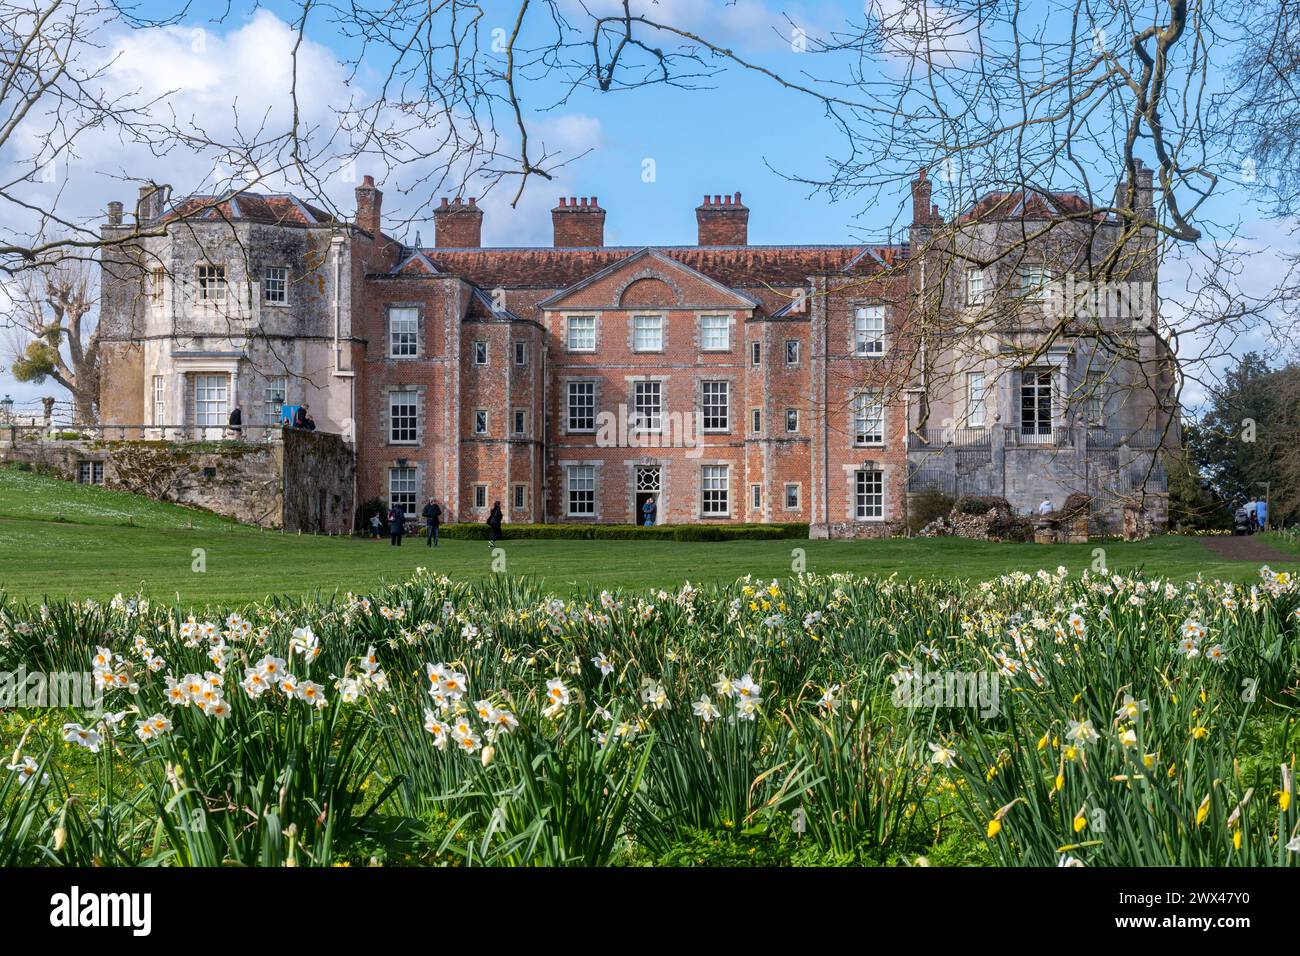 Mottisfont Abbey, residenza storica, giardino e tenuta di campagna, vista di primavera con narcisi in fiore, Hampshire, Inghilterra, Regno Unito, durante marzo Foto Stock